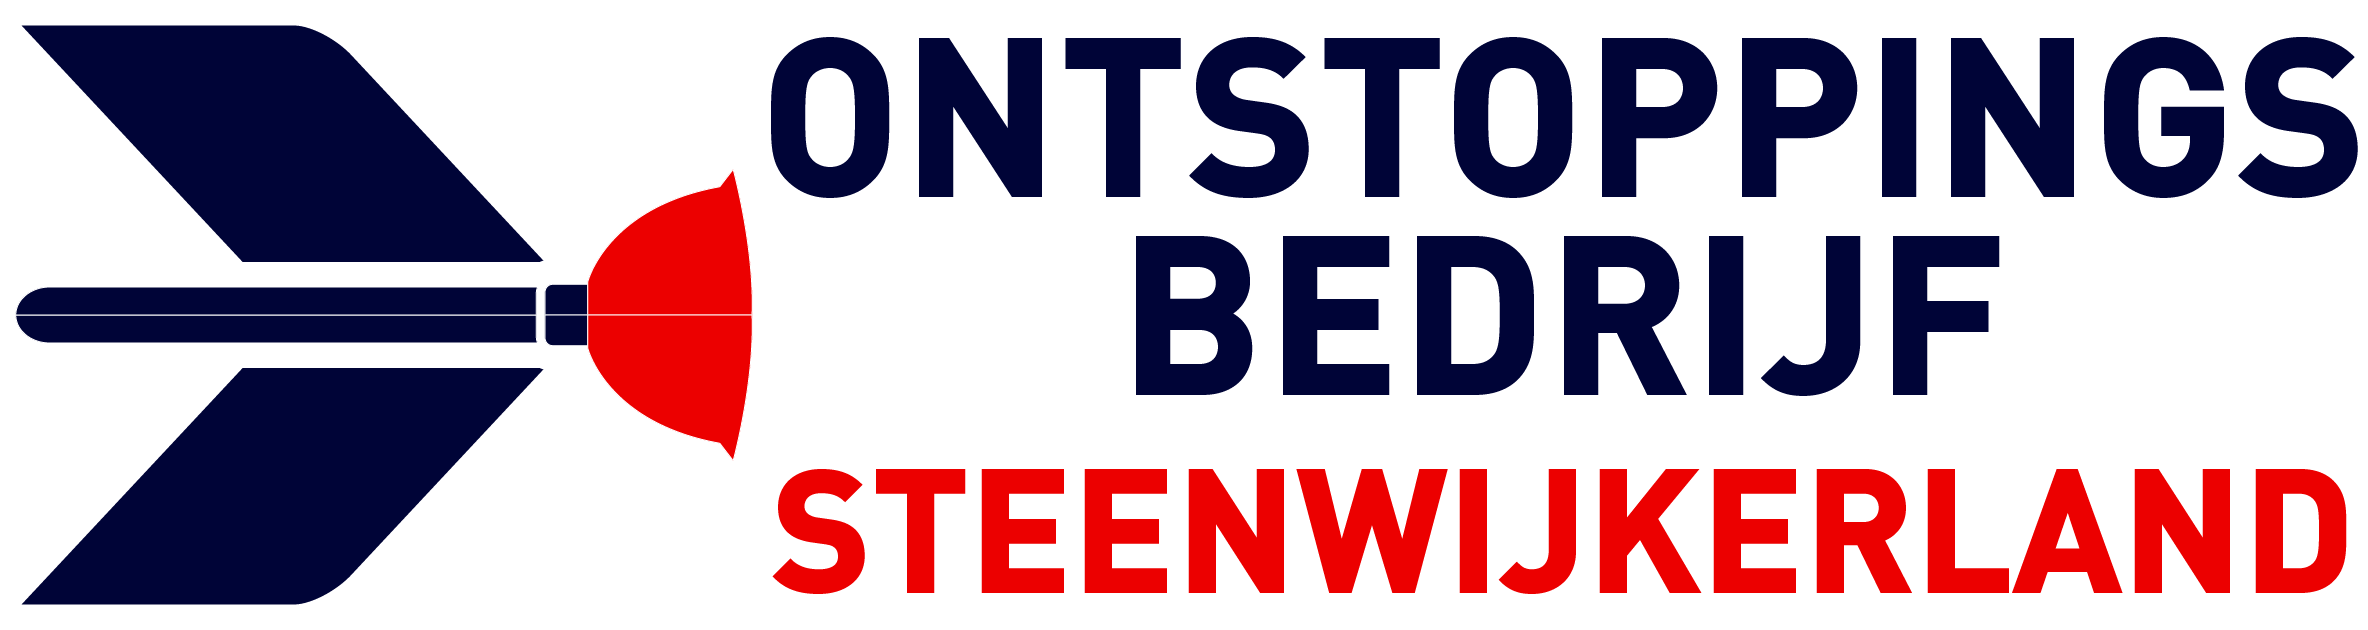 Ontstoppingsbedrijf Steenwijkerland logo